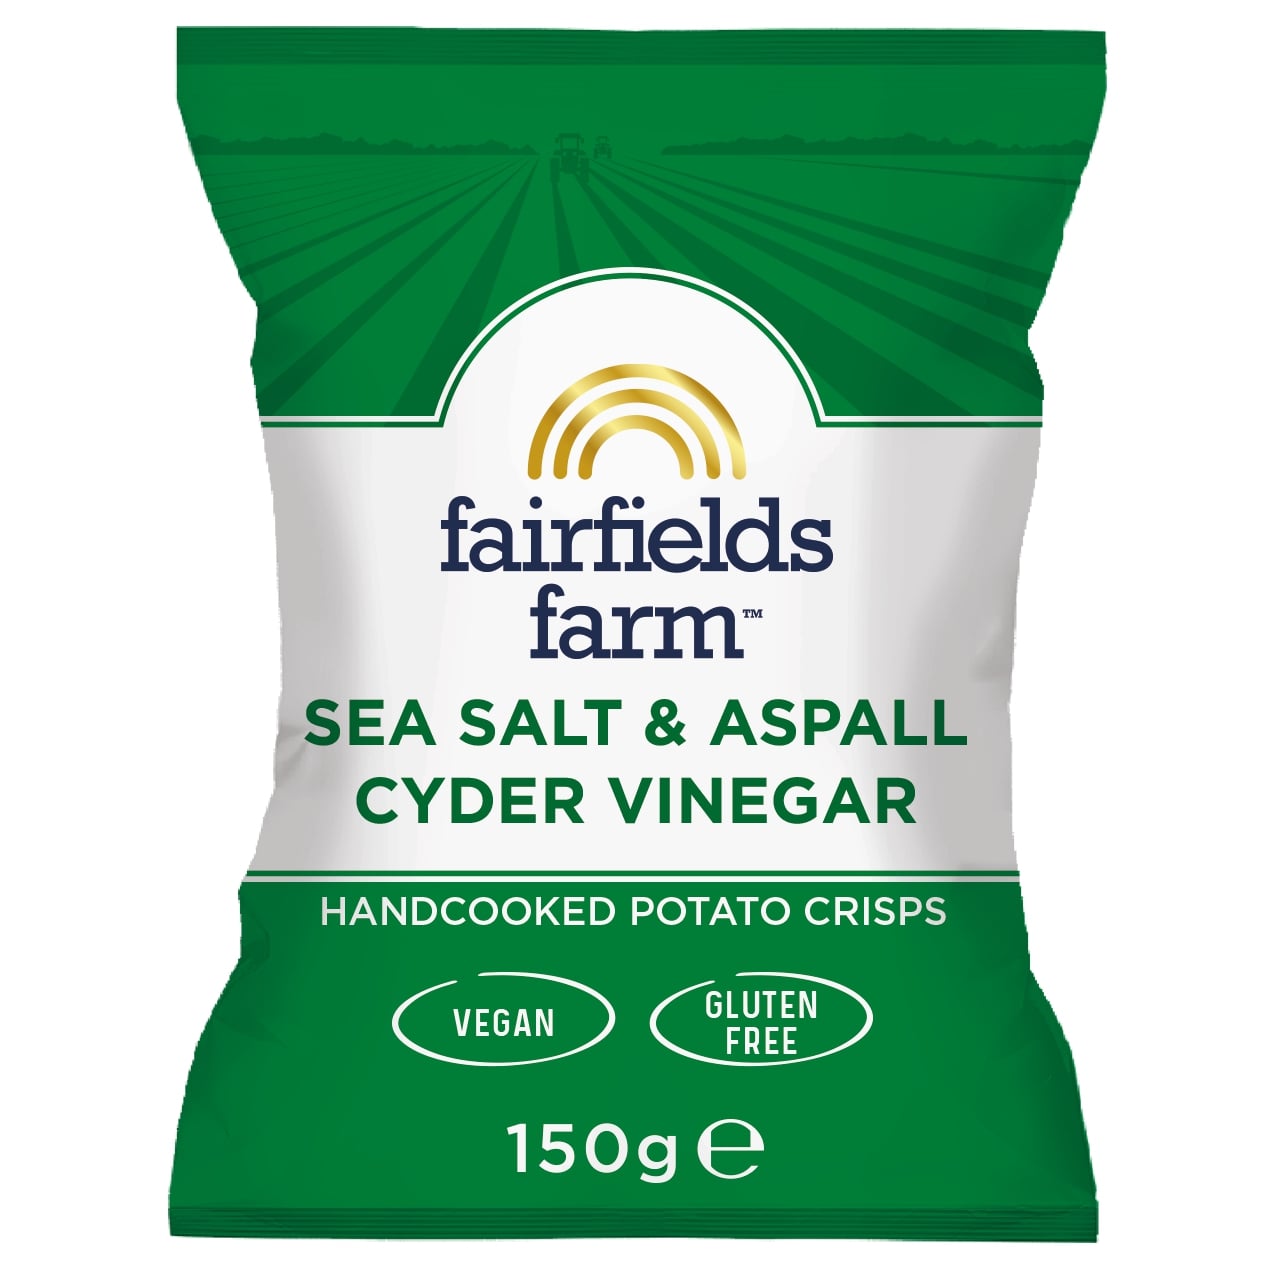 Sea Salt & Aspall Cyder Vinegar – 10 x 150g bags